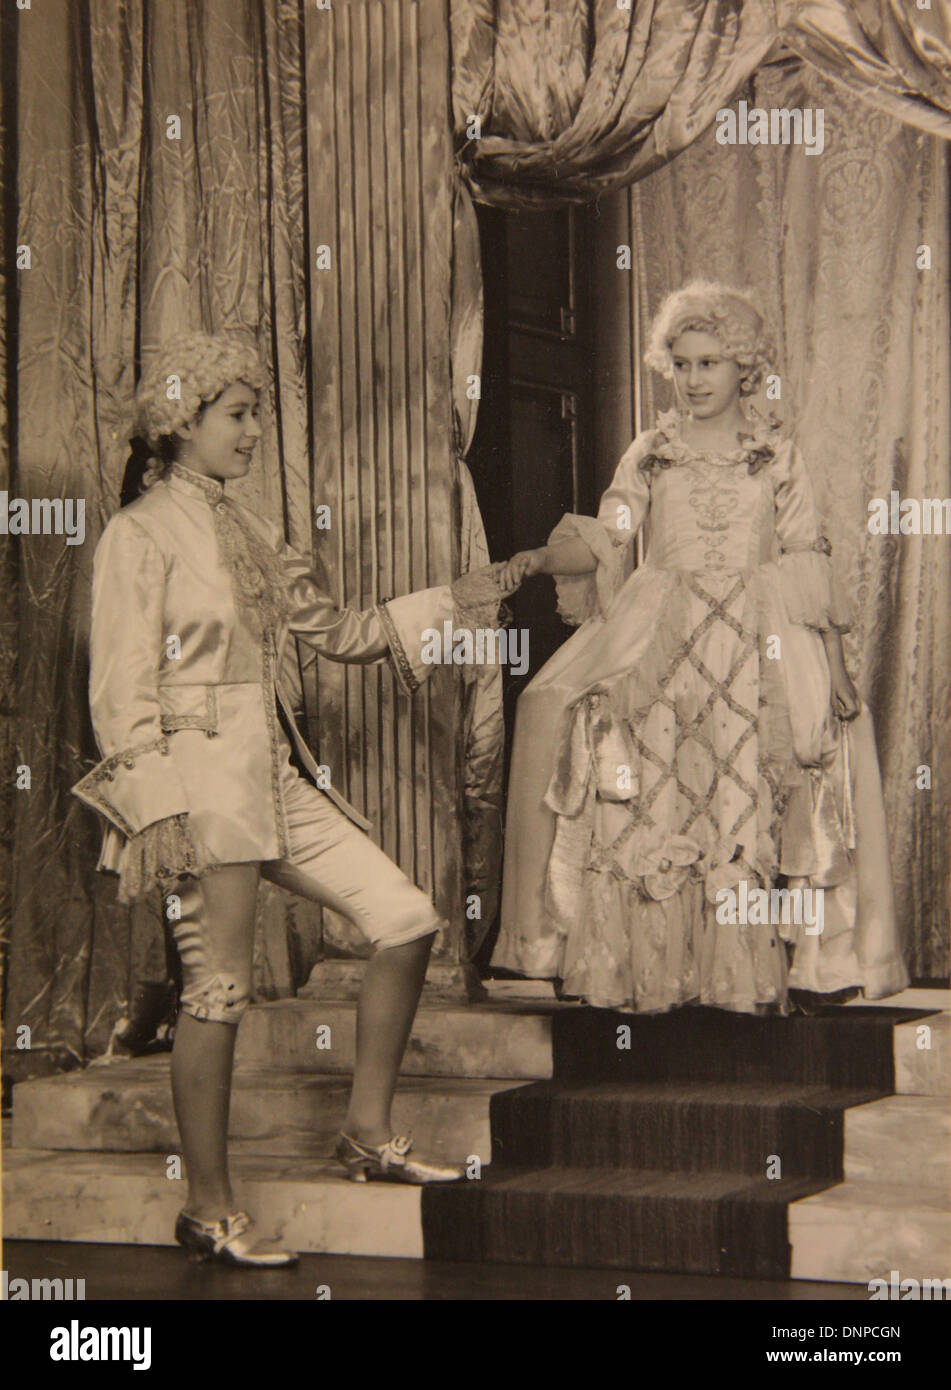 Une photographie de la princesse Margaret (à droite) et de la princesse Elizabeth (à gauche) dans le jeu Aladdin, 1943 Banque D'Images